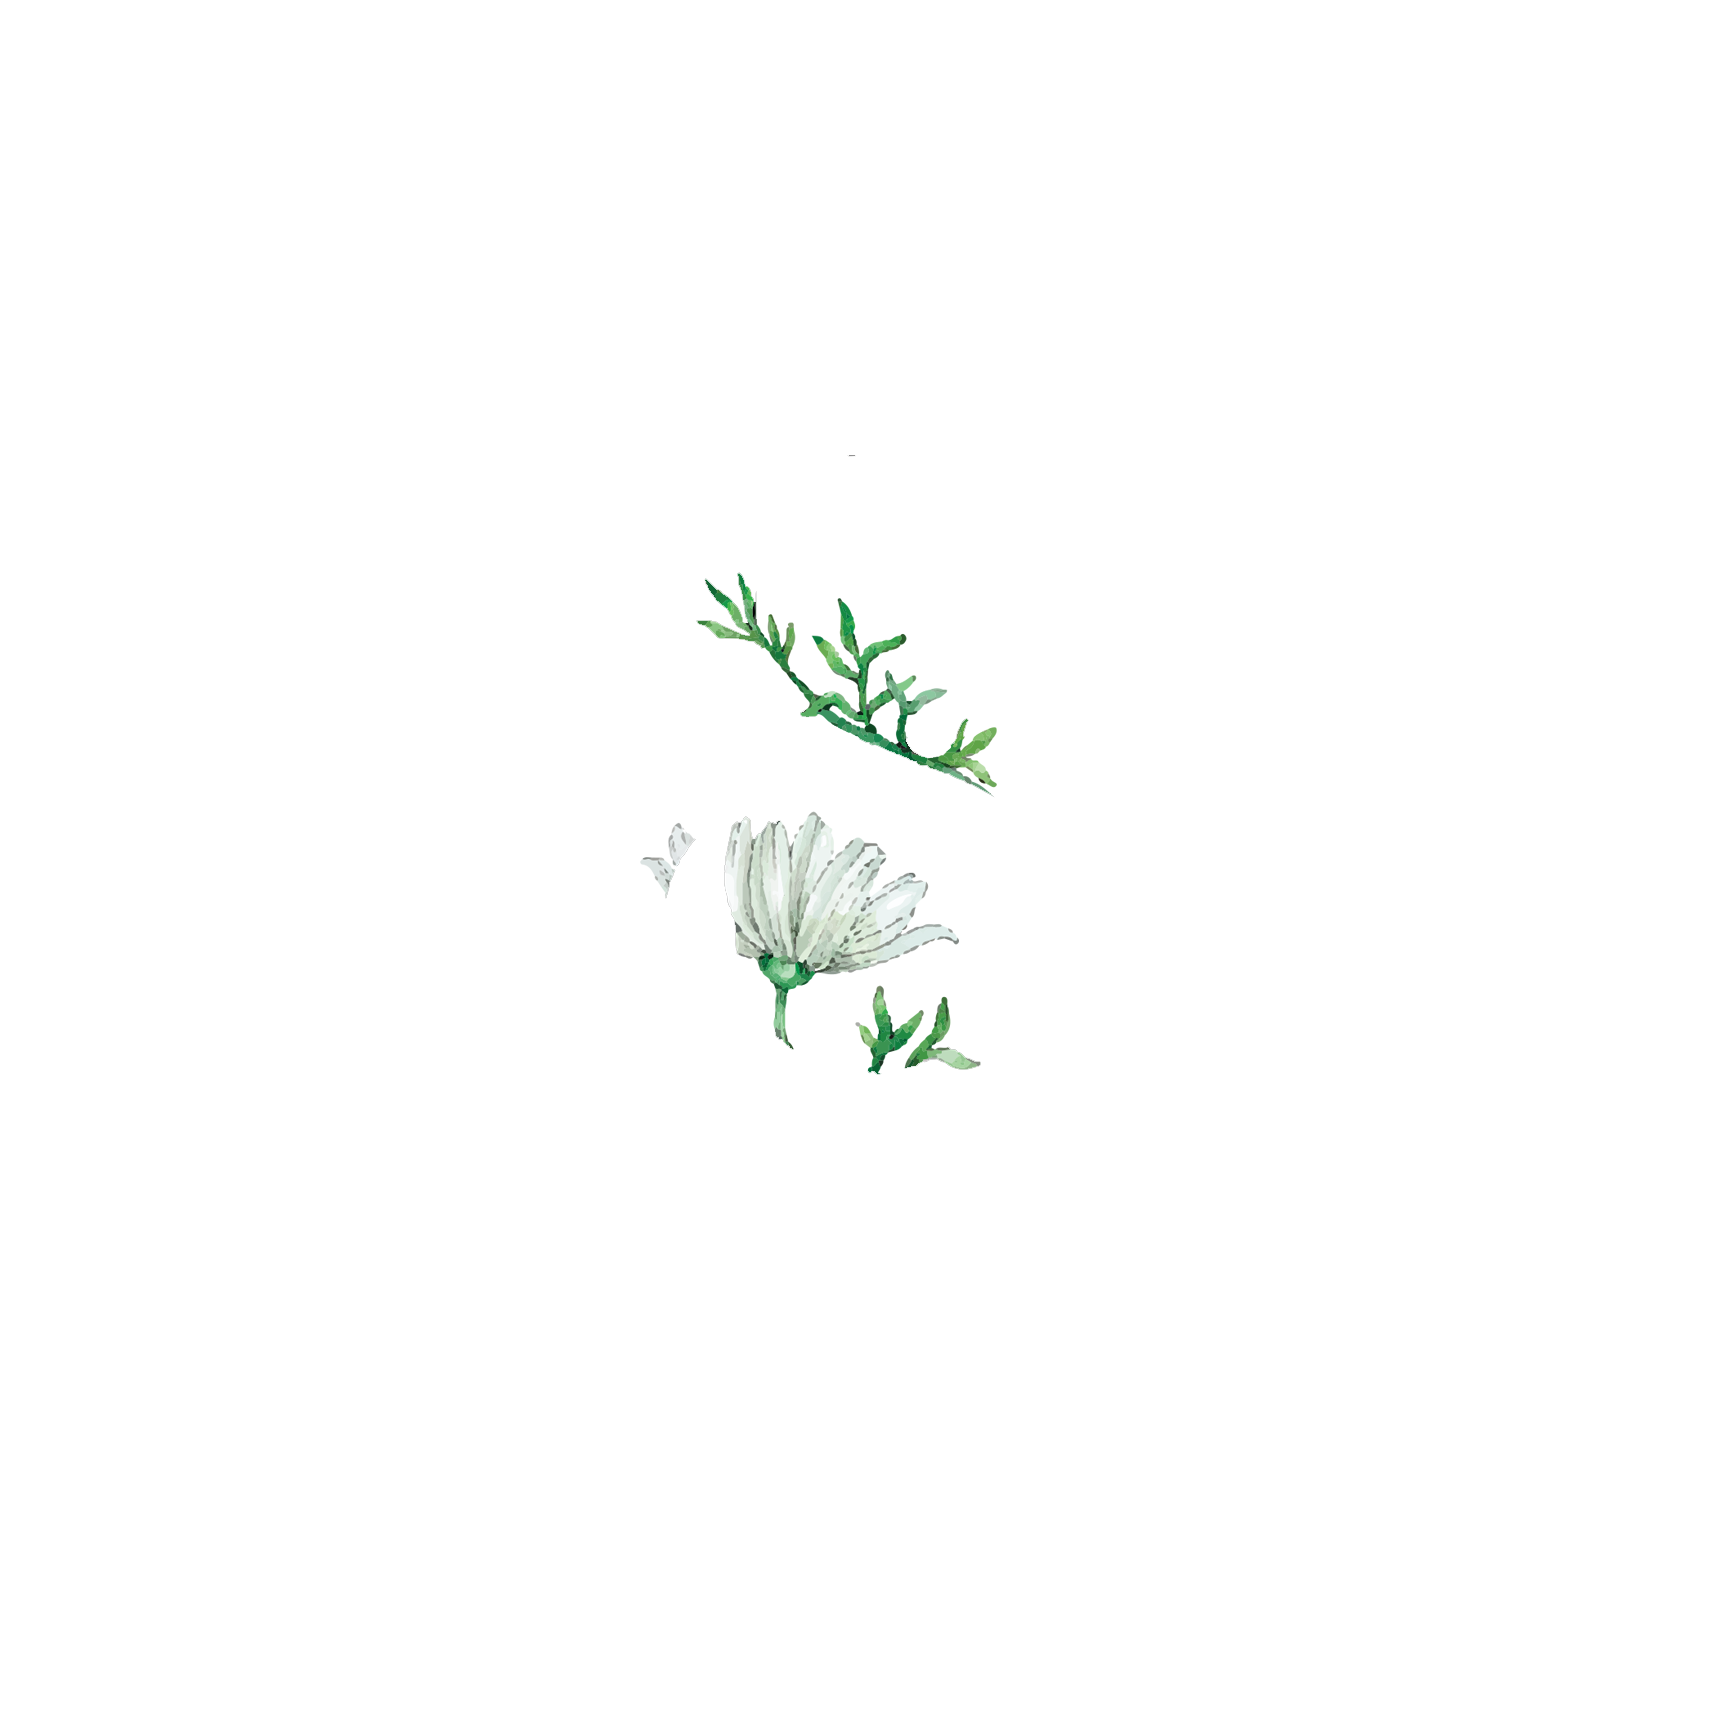 Click to read Day 8 - Breath